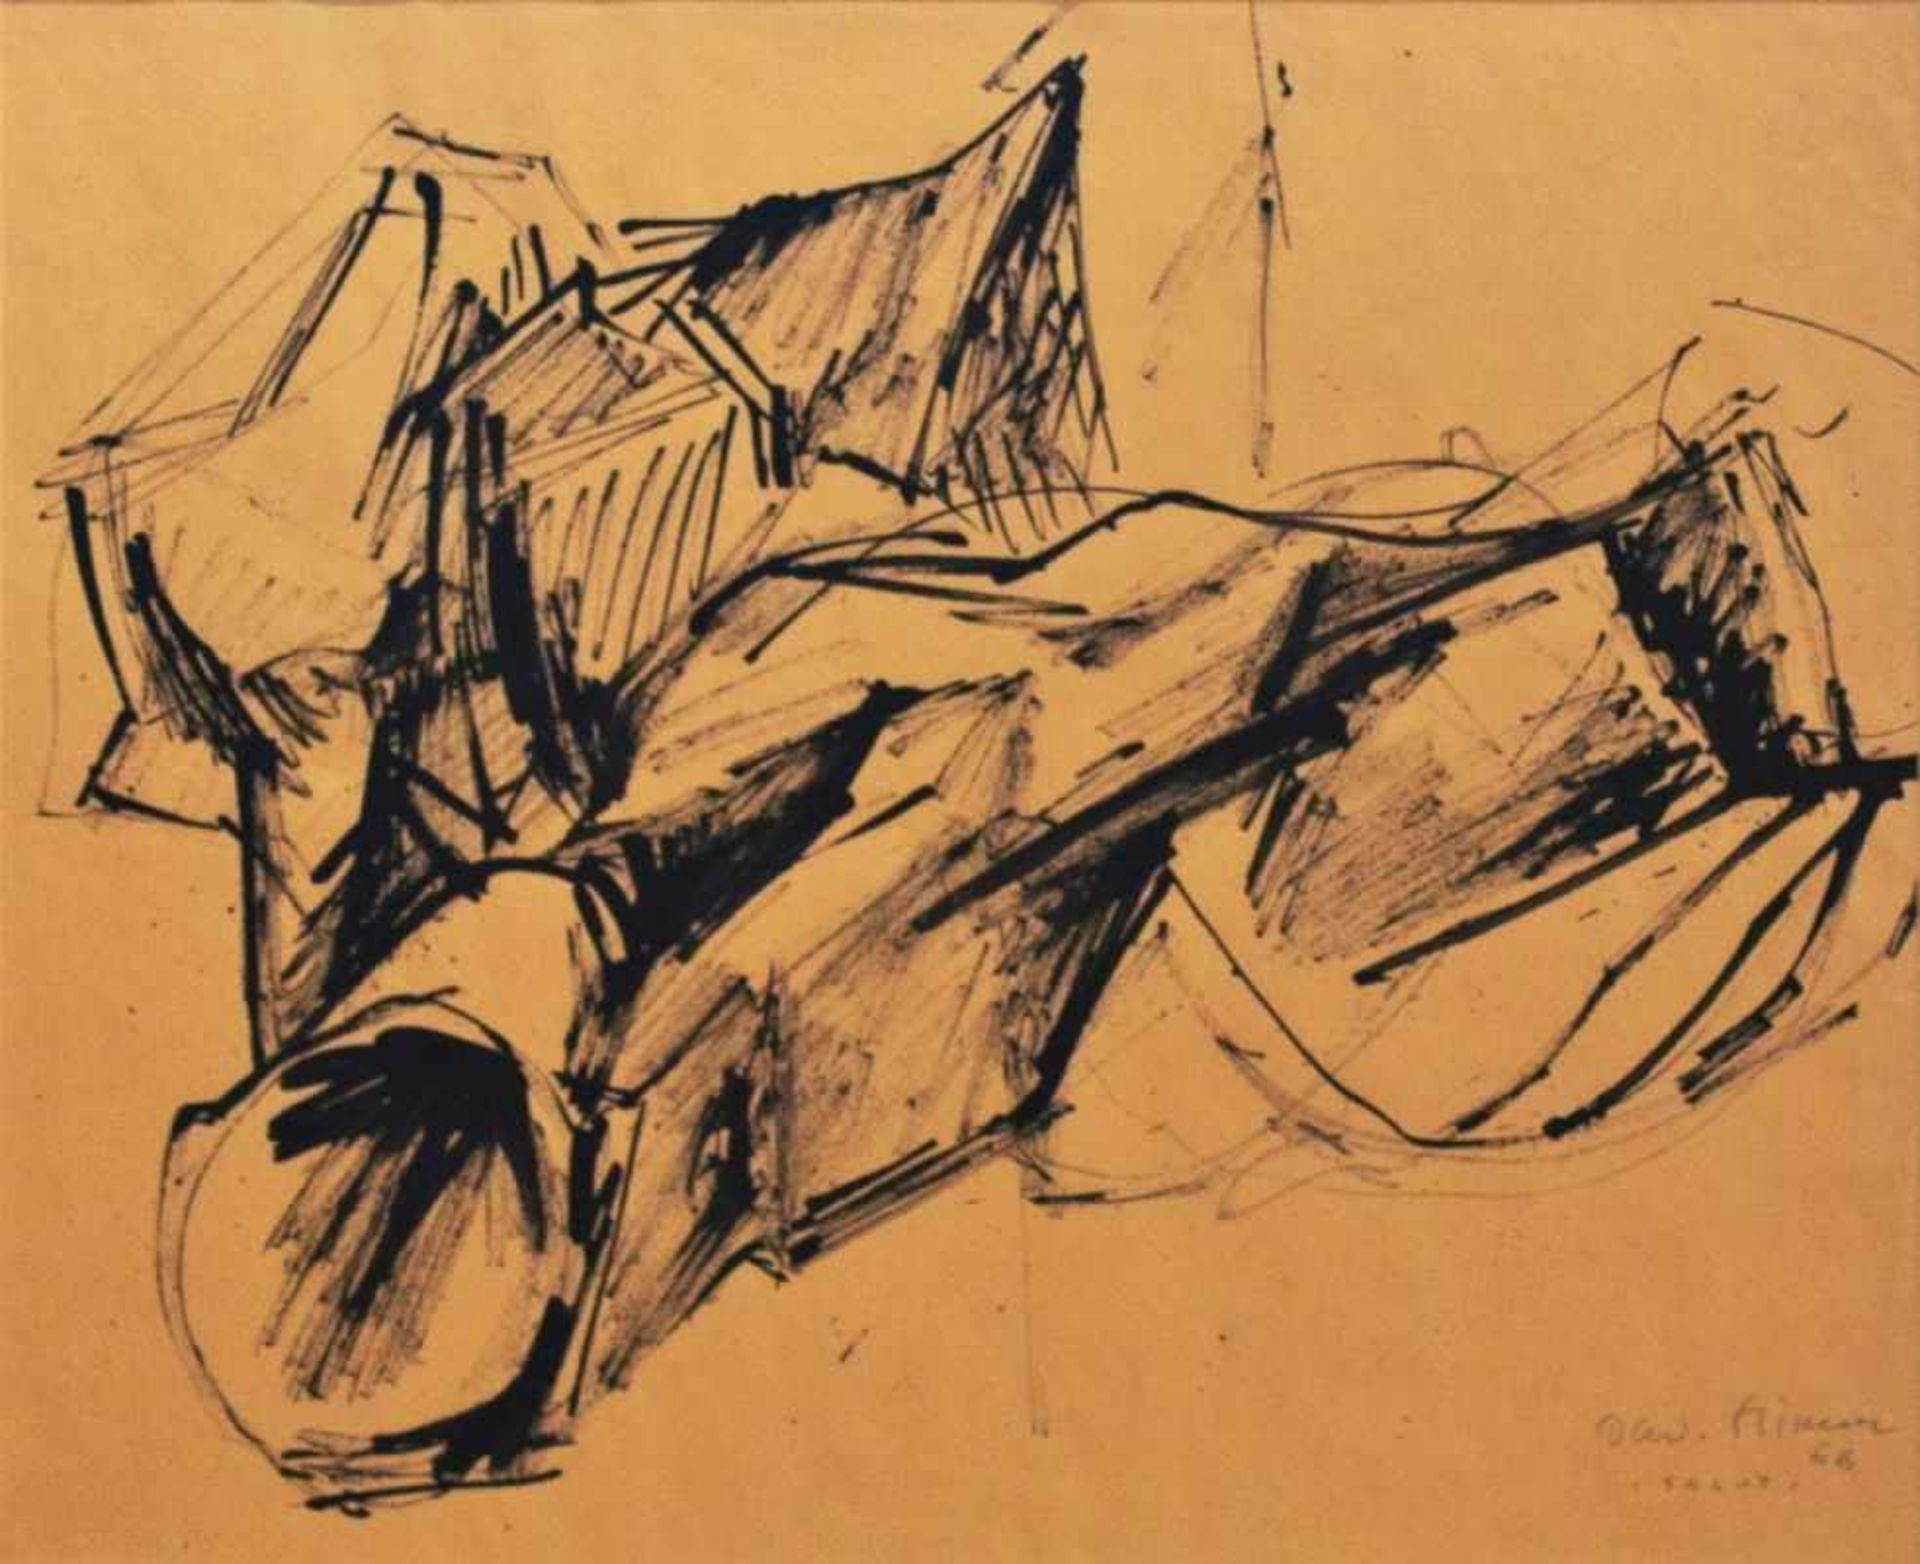 OSWALD STIMM (1923 WIEN - 2014 WIEN) SALUT, 1966 Tusche auf Papier, 36 x 44 cm gerahmt, Maß mit